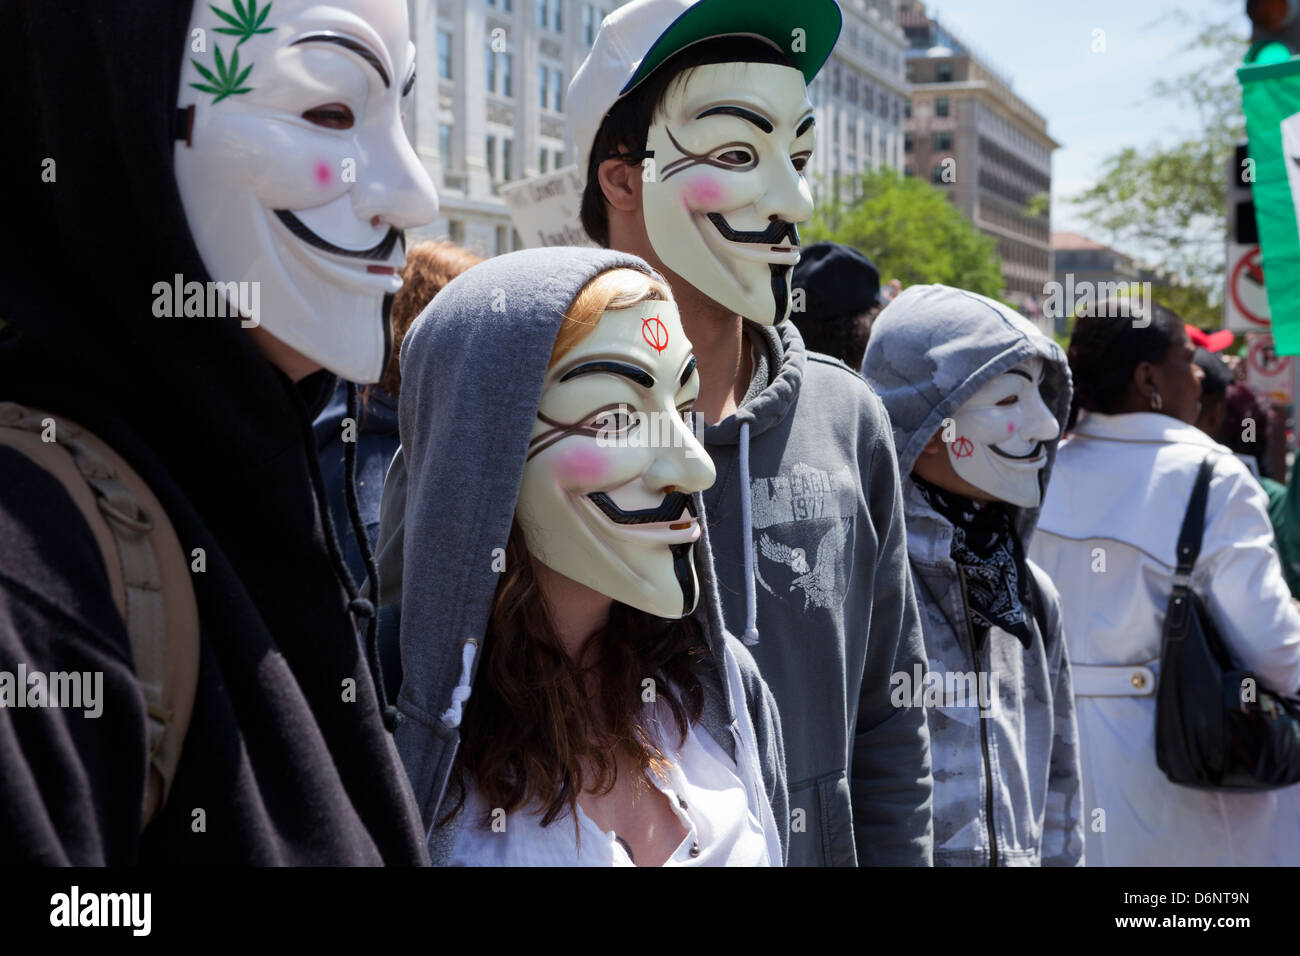 Un groupe de personnes portant des masques de Guy Fawkes lors d'un rassemblement Banque D'Images